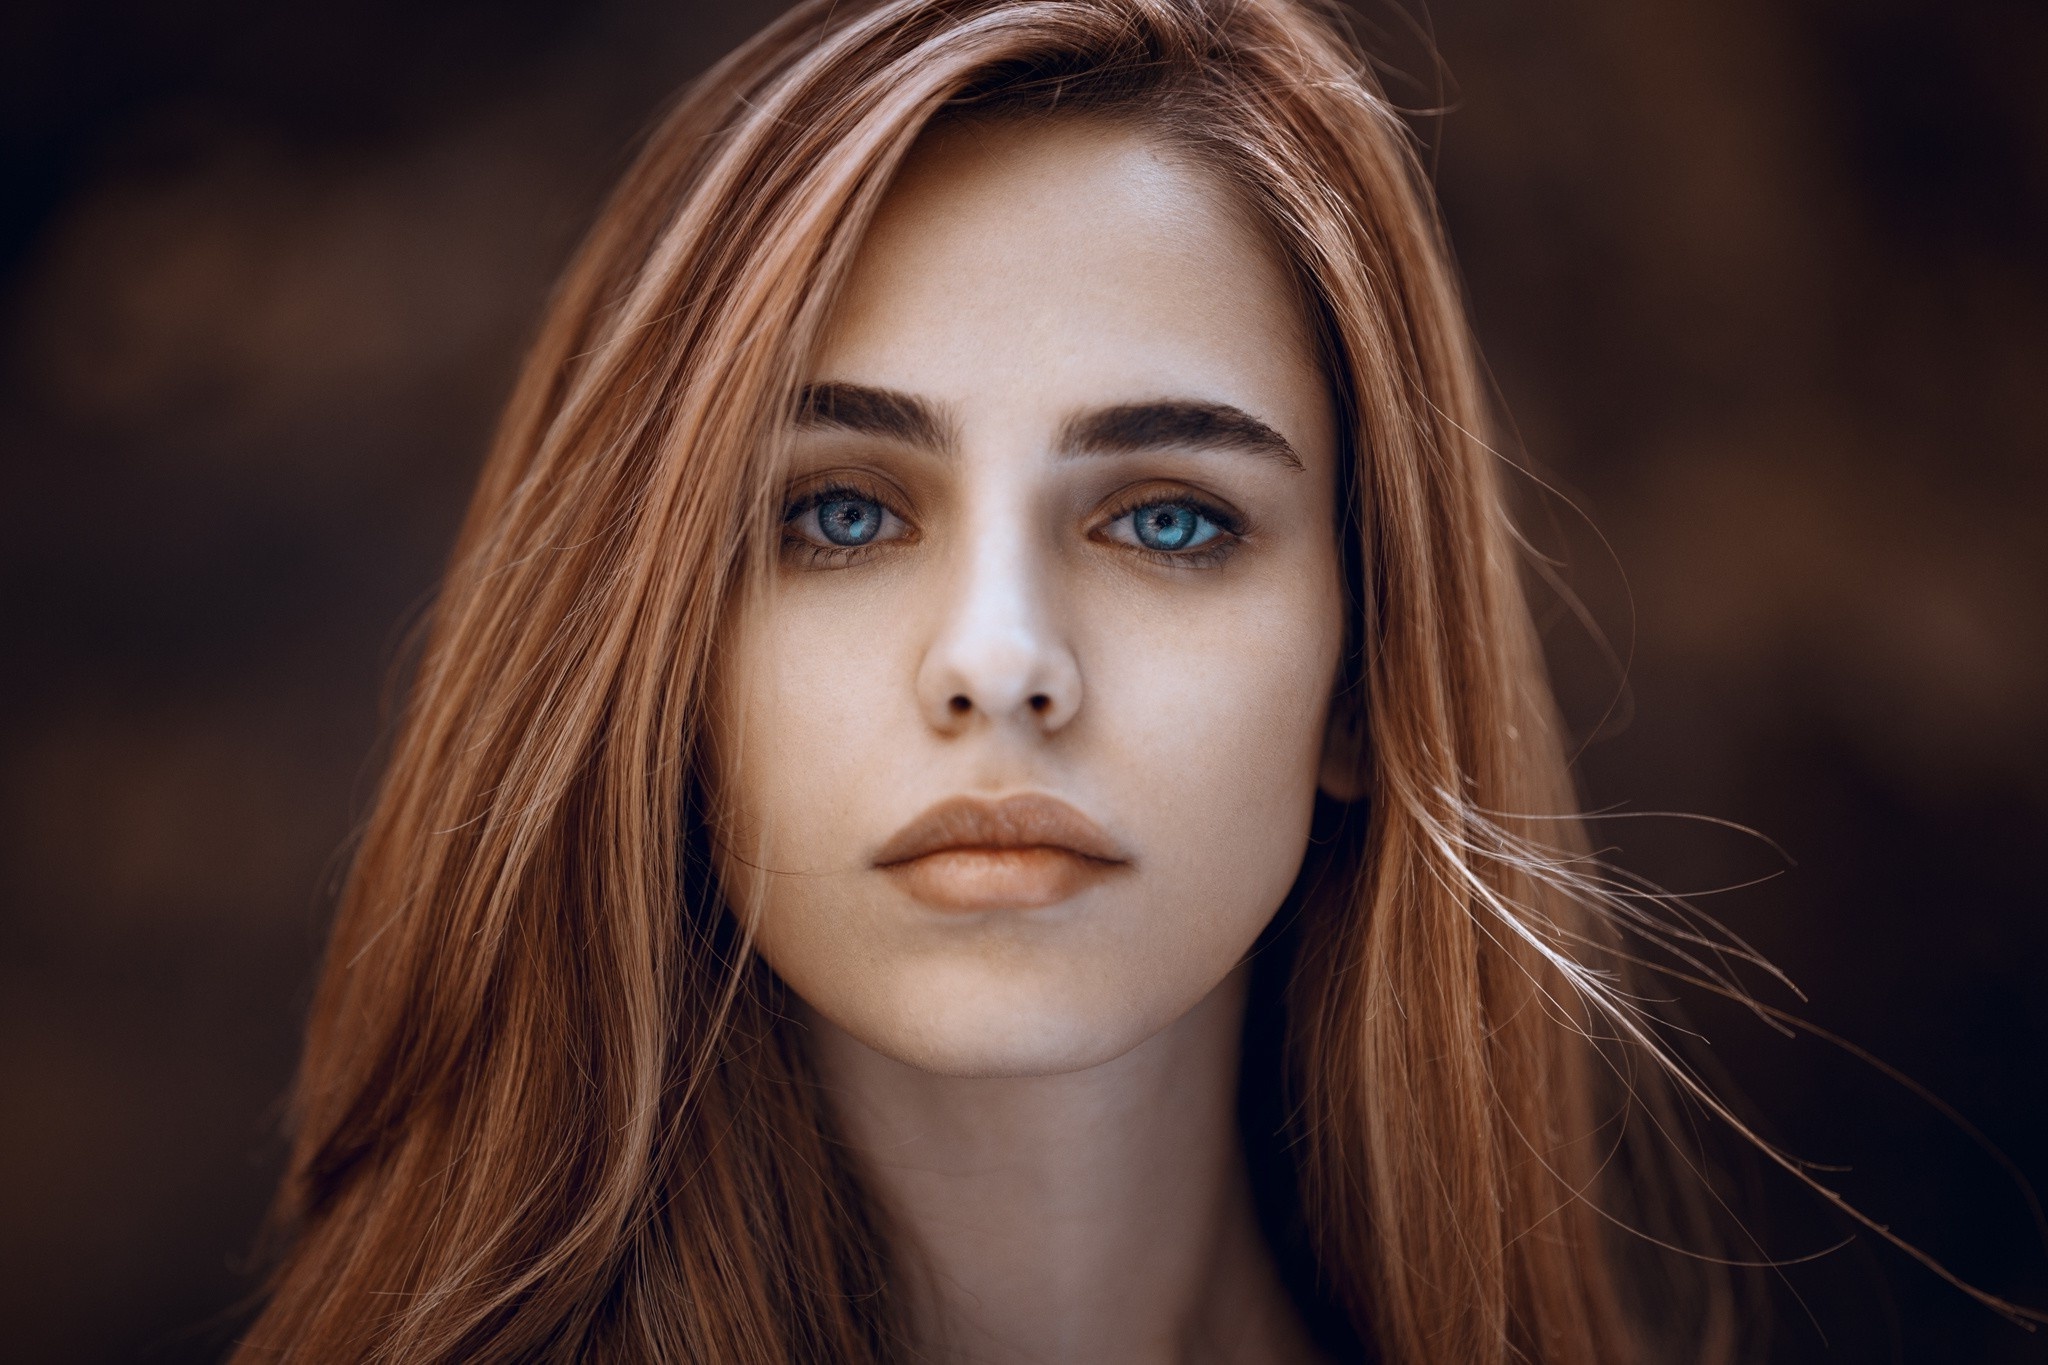 Portrait. Портрет девушки. Девушка в порту. Фотопортрет девушки. Модель с голубыми глазами.